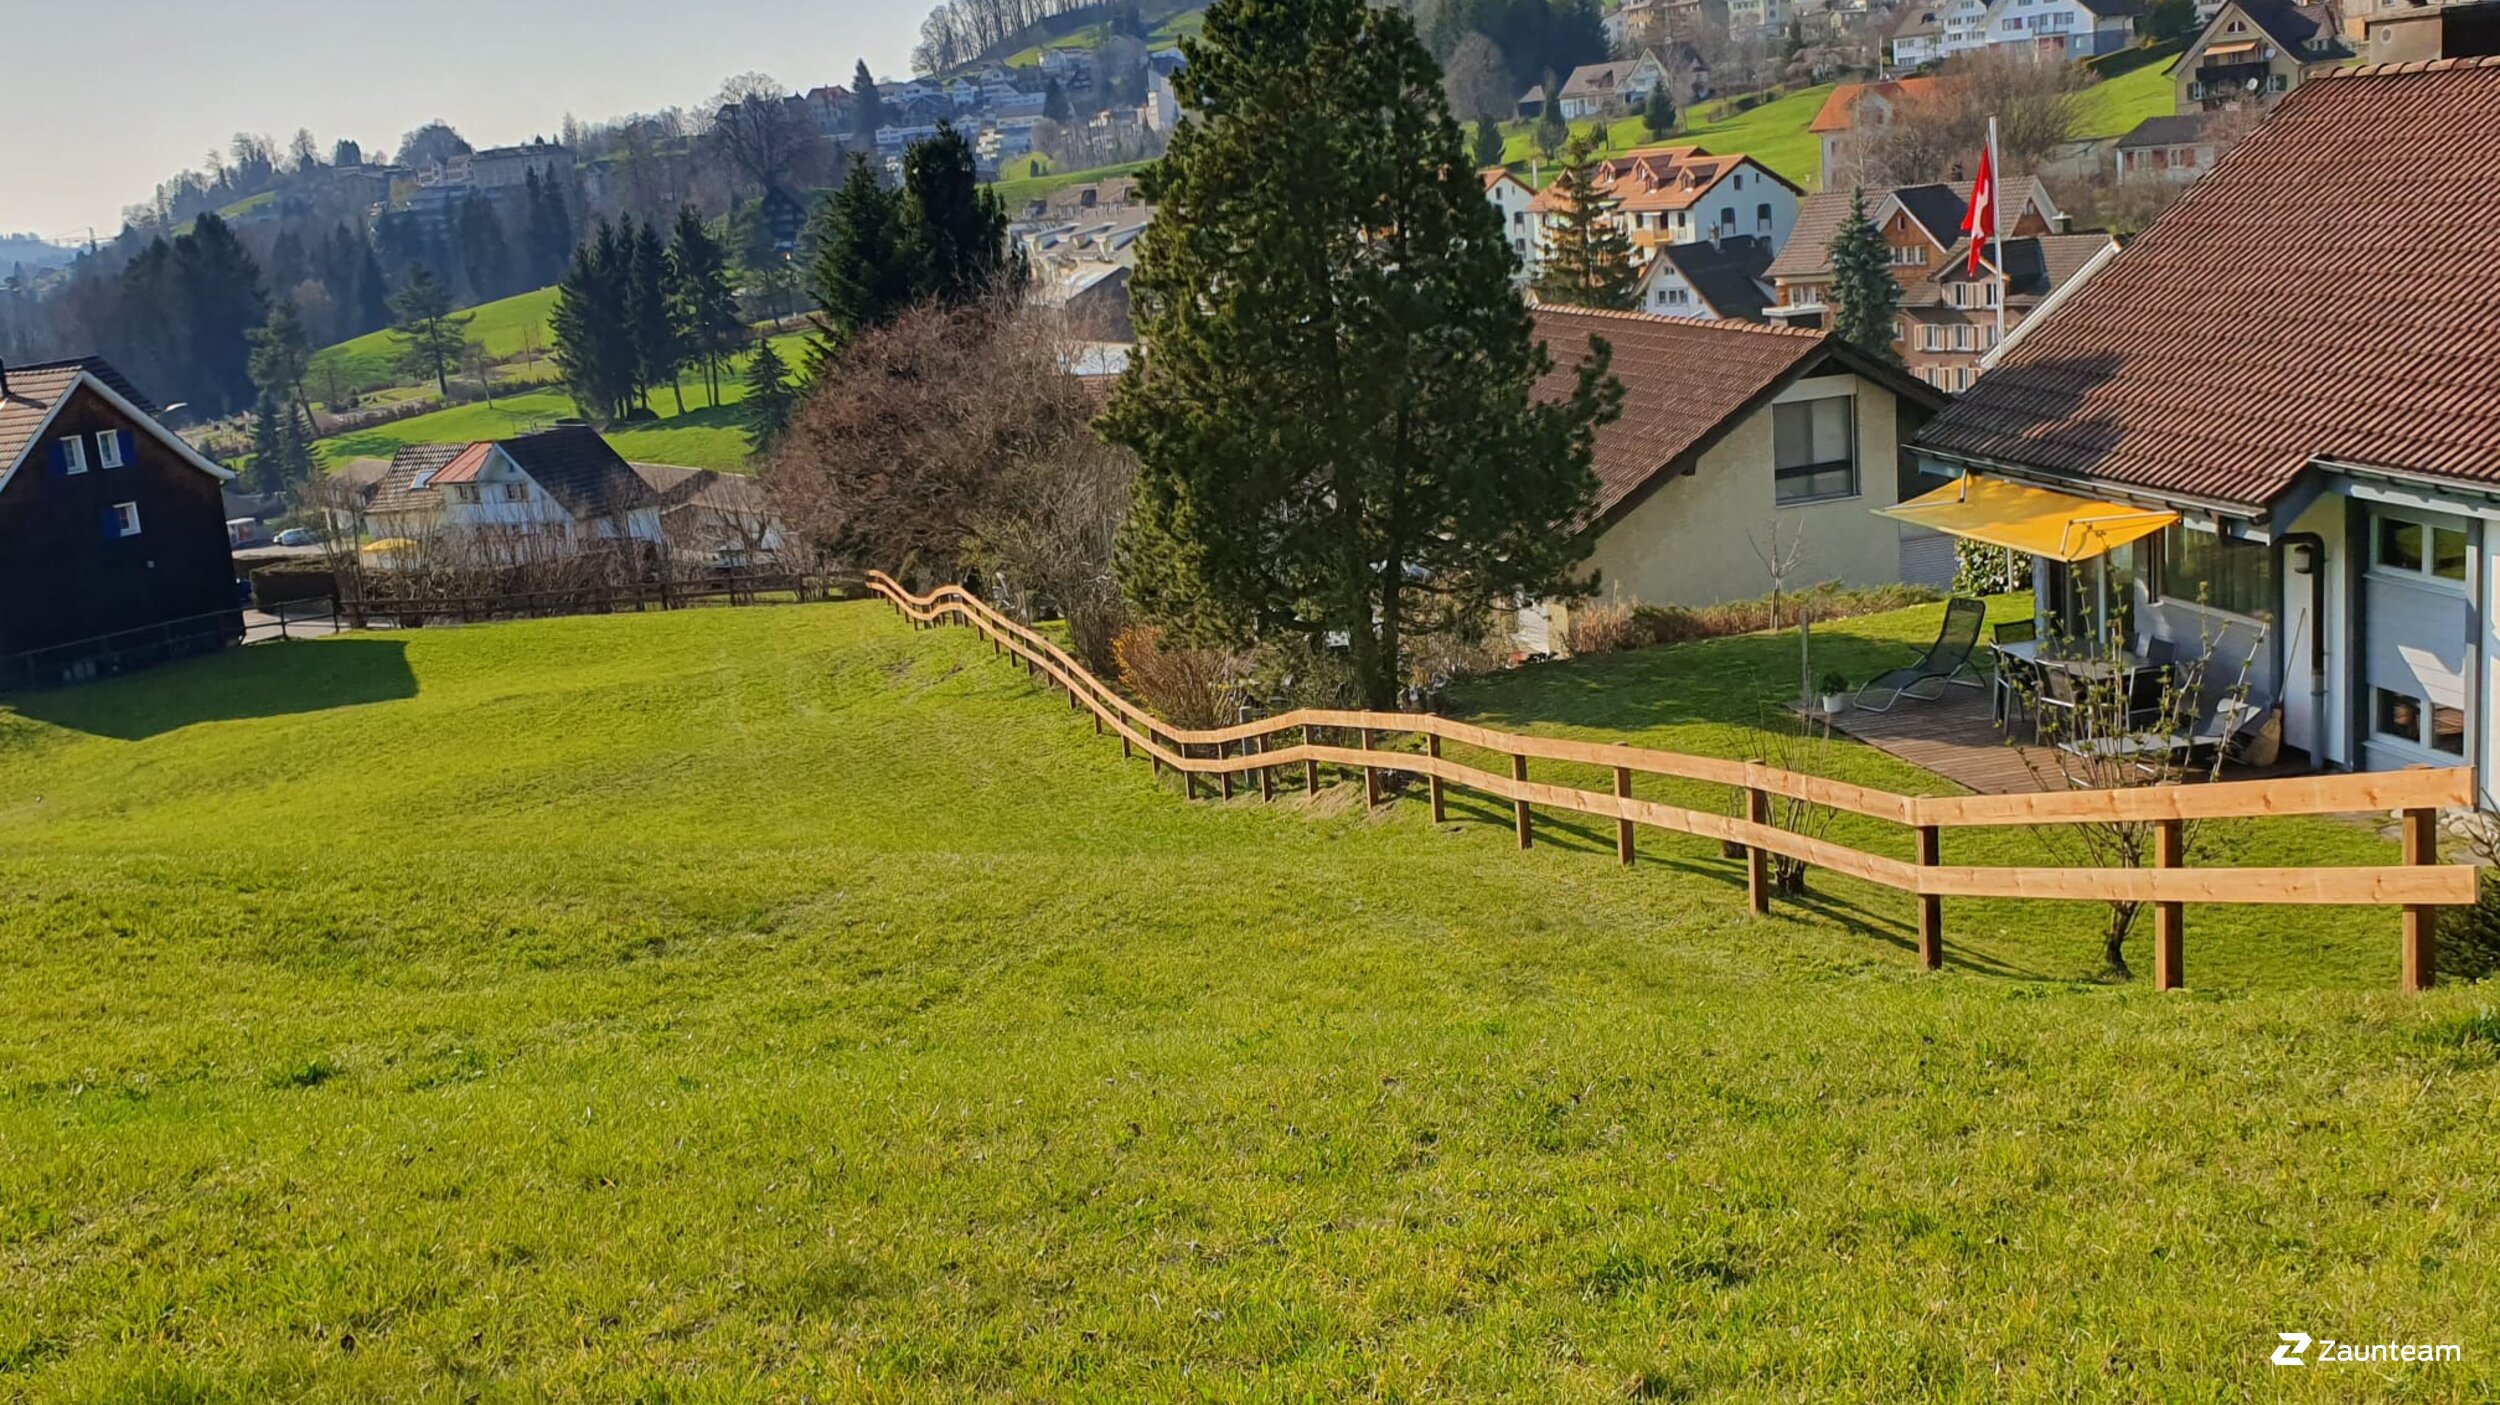 Clôture ranch de 2020 à 9053 Teufen  Suisse de Zaunteam Appenzellerland.